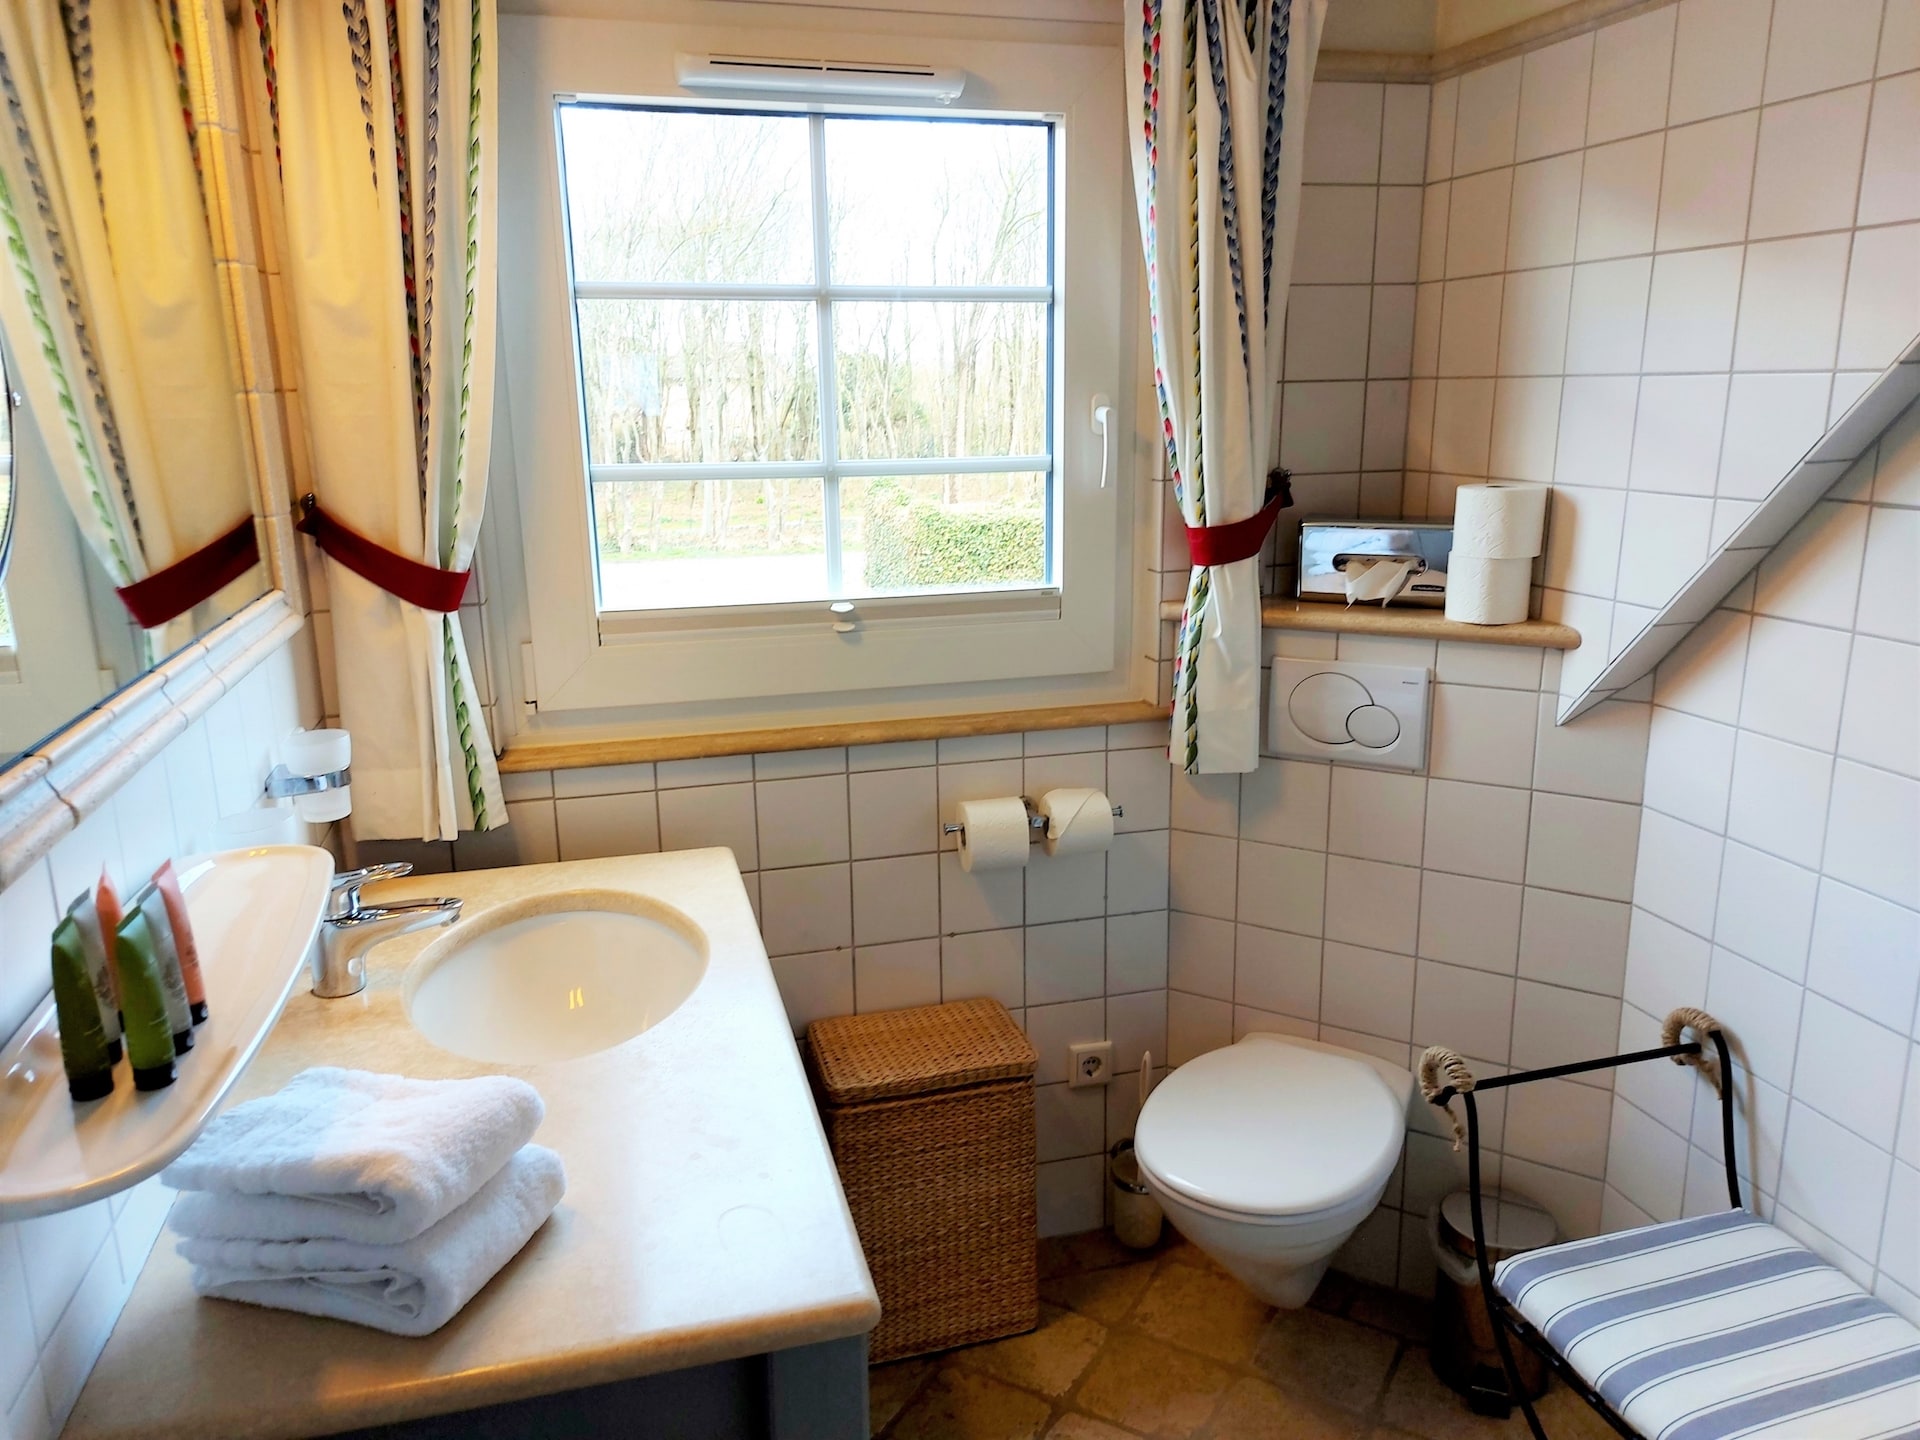 Badezimmer in der Ferienwohnung A3 in Westerland auf Sylt